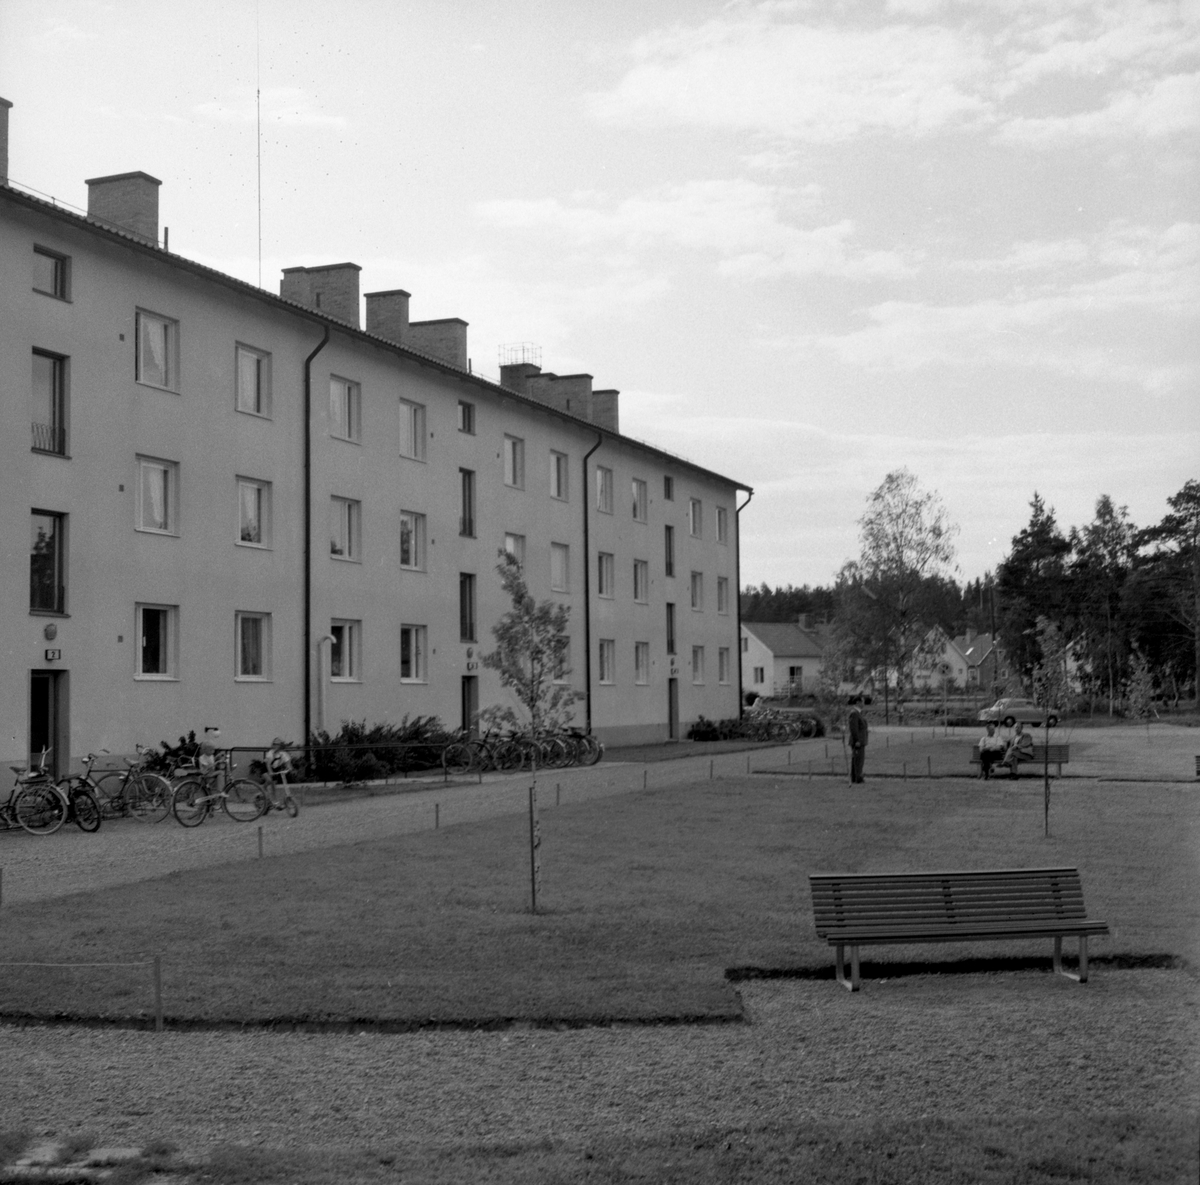 Någonstans i Värmland - från slutet av 1950-talet: Munkfors. Lämna gärna en kommentar om du vet något om bilden.